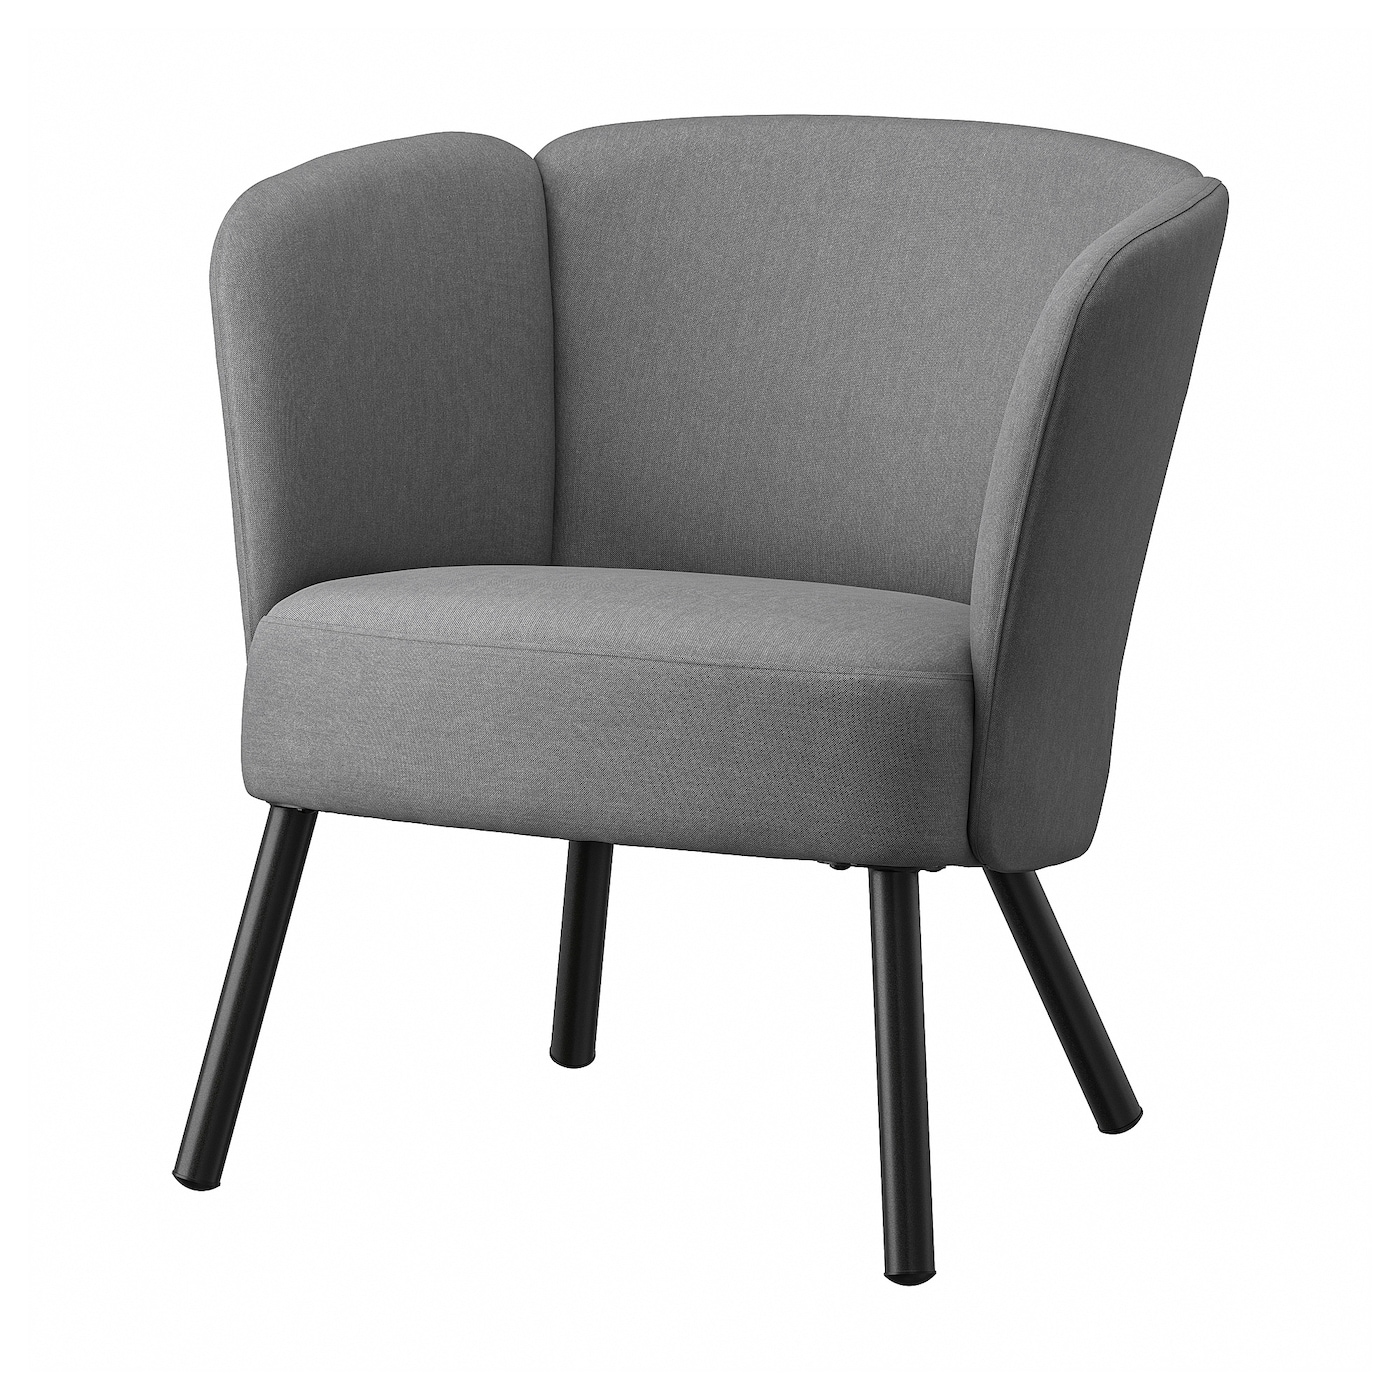 ХЕРРОКРА Кресло, Виссле серый HERRÅKRA IKEA кресло buro ch 299 g 15 48 спинка сетка серый сиденье серый 15 48